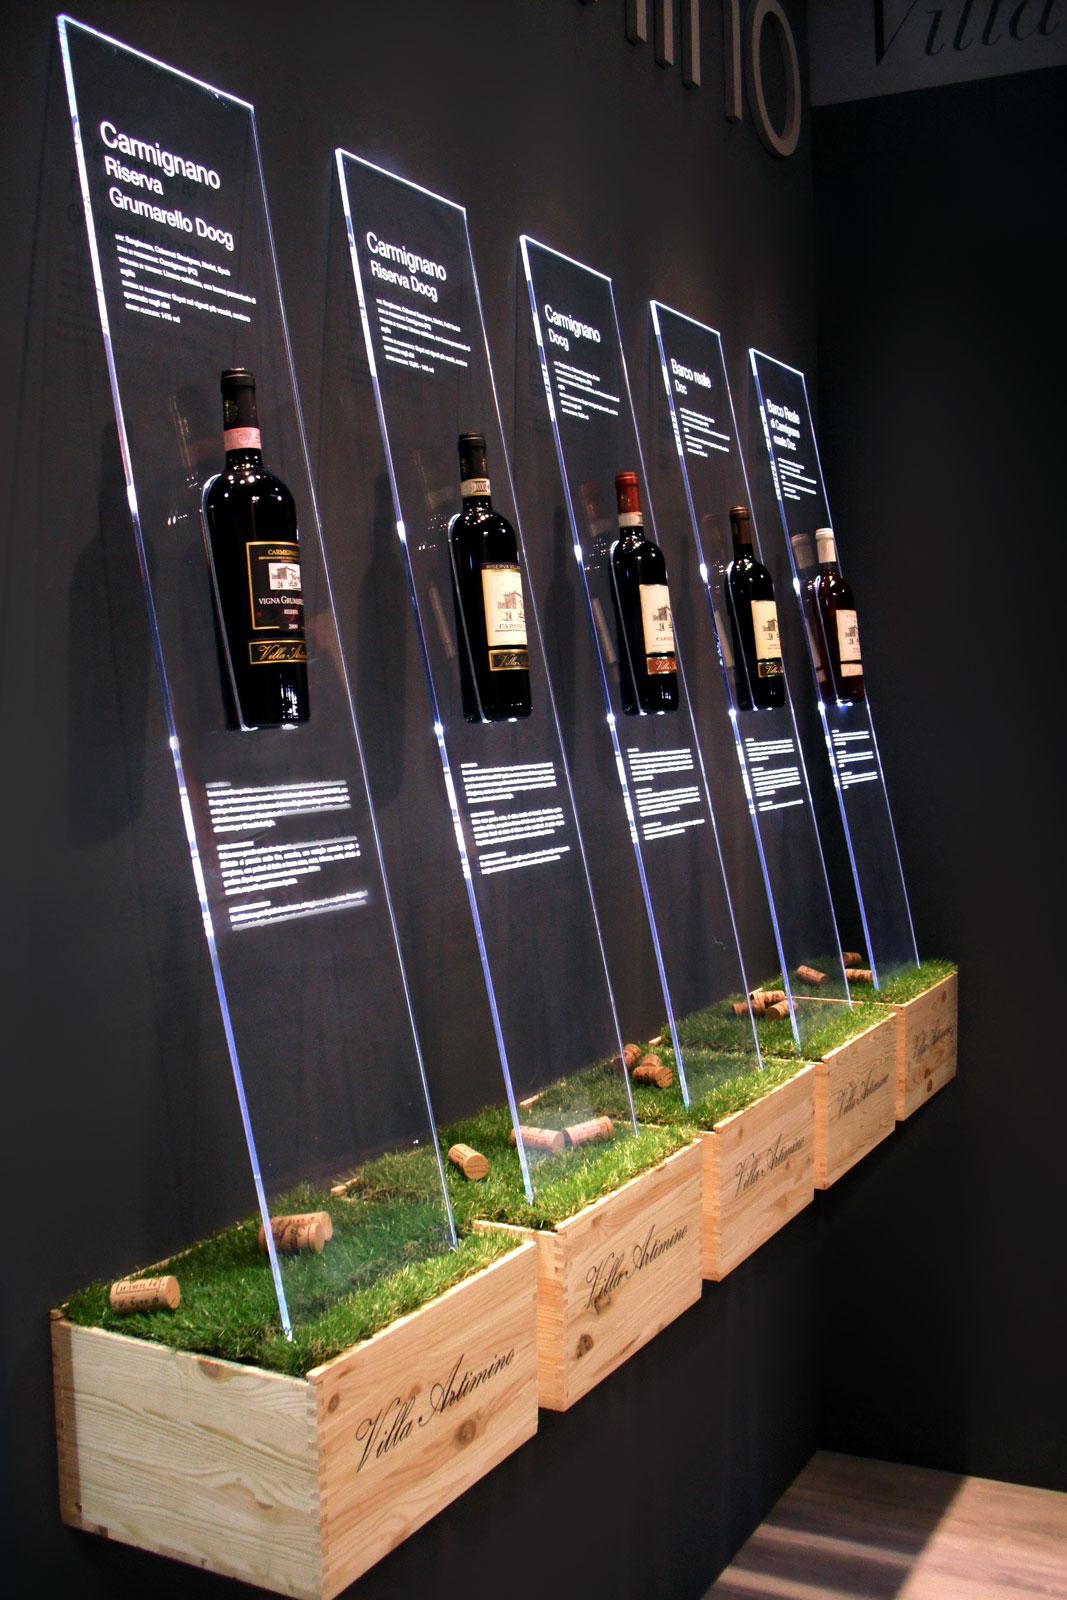 Parete espositiva di vini realizzata con cassette in legno, lastre in plexiglassi con illuminazione a led